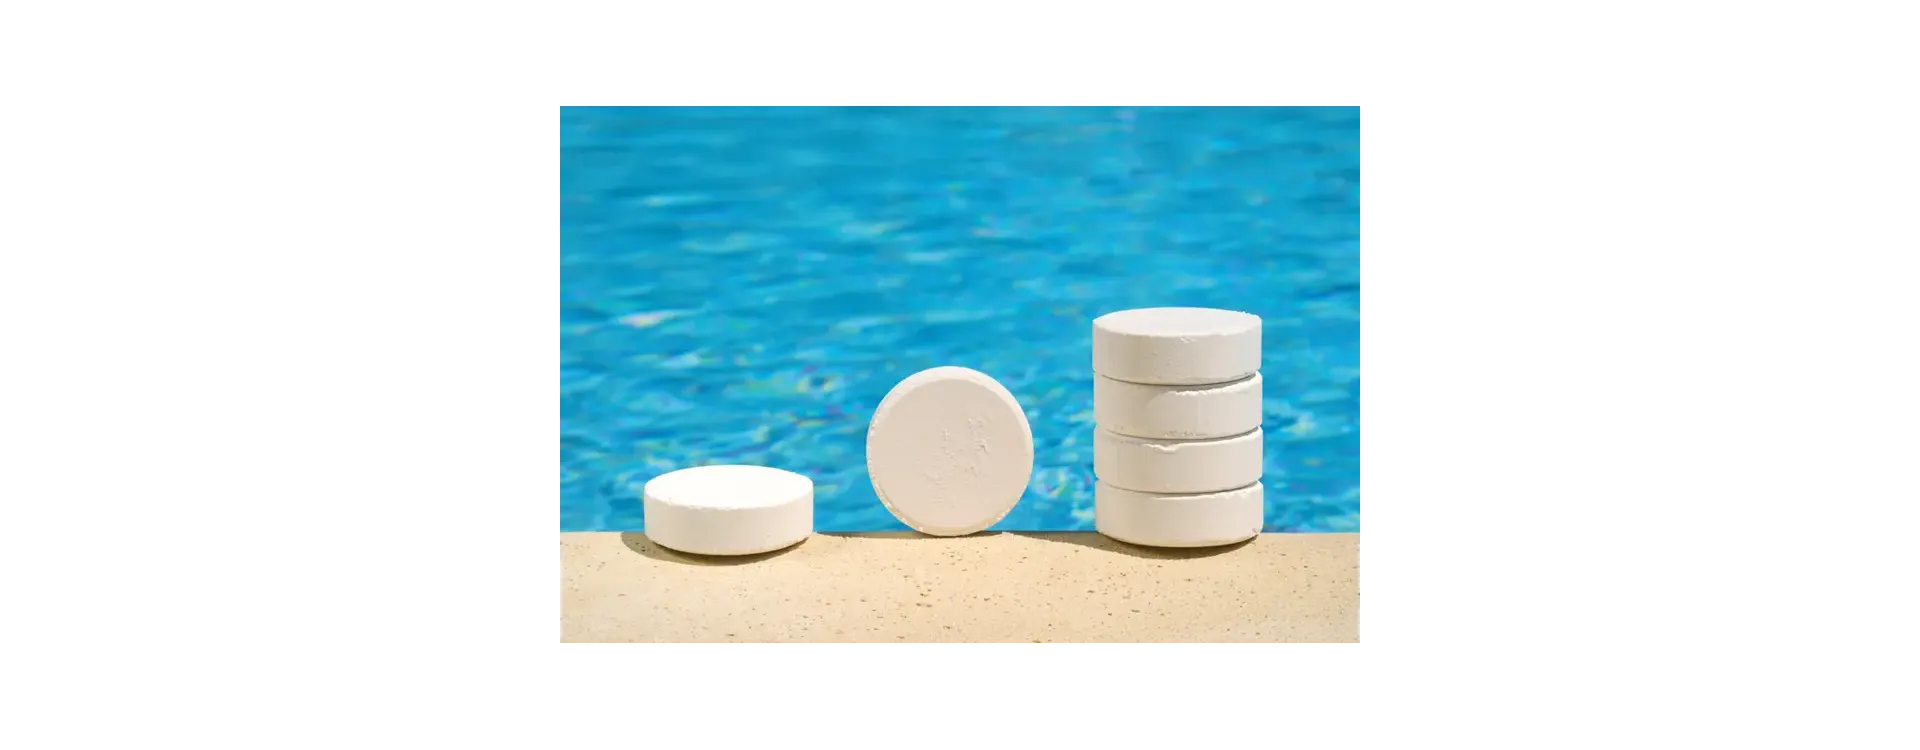 Cómo medir los parámetros del agua de tu piscina